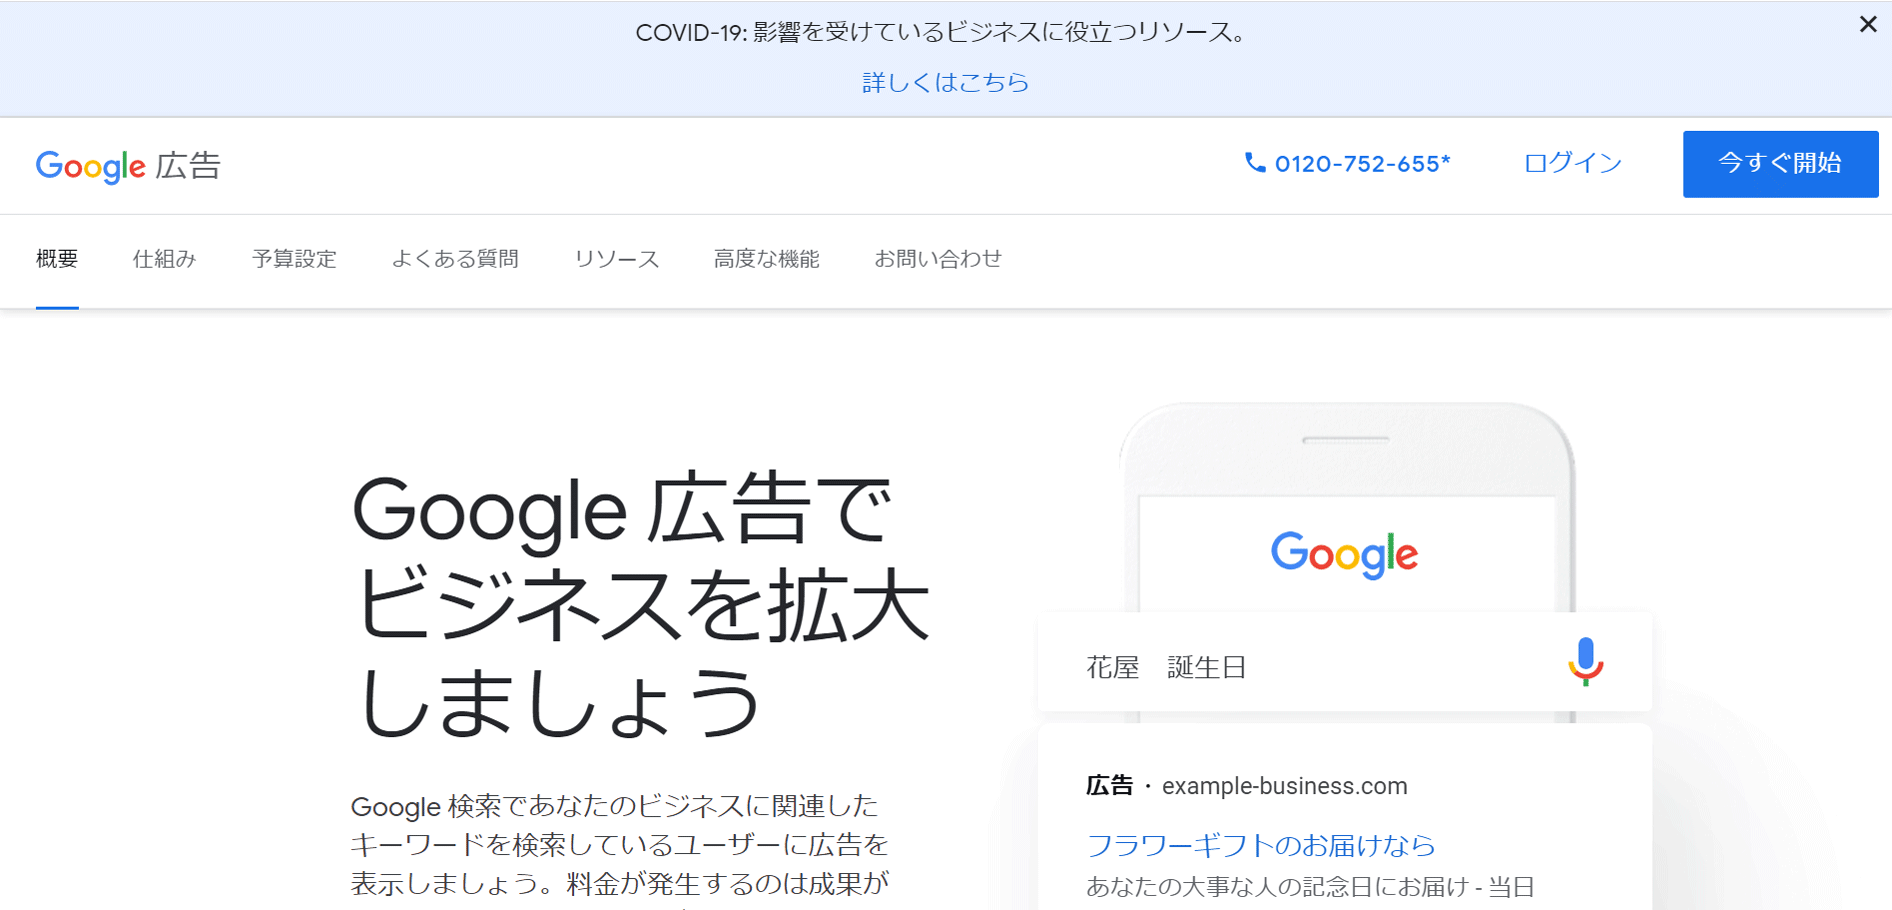 グーグル株式会社「Google広告」のスクリーンショット